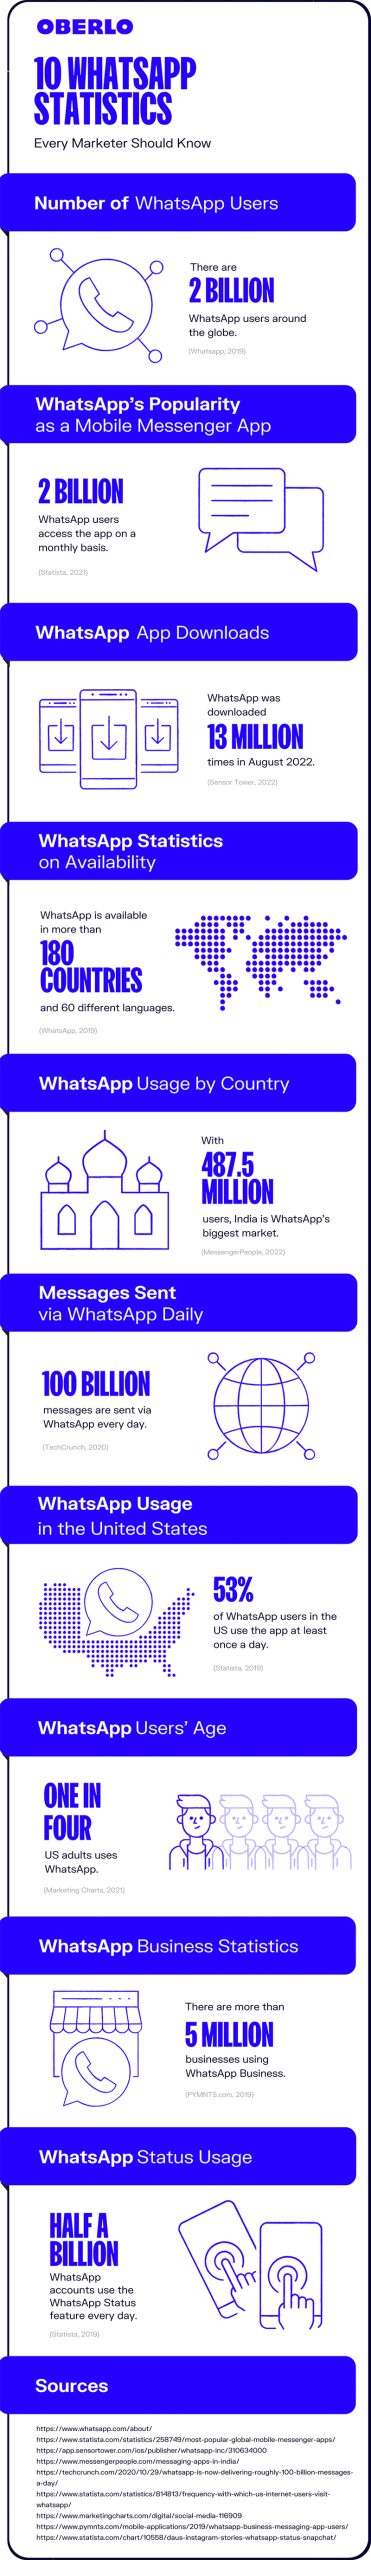 10 WhatsApp-statistieken in infographic.